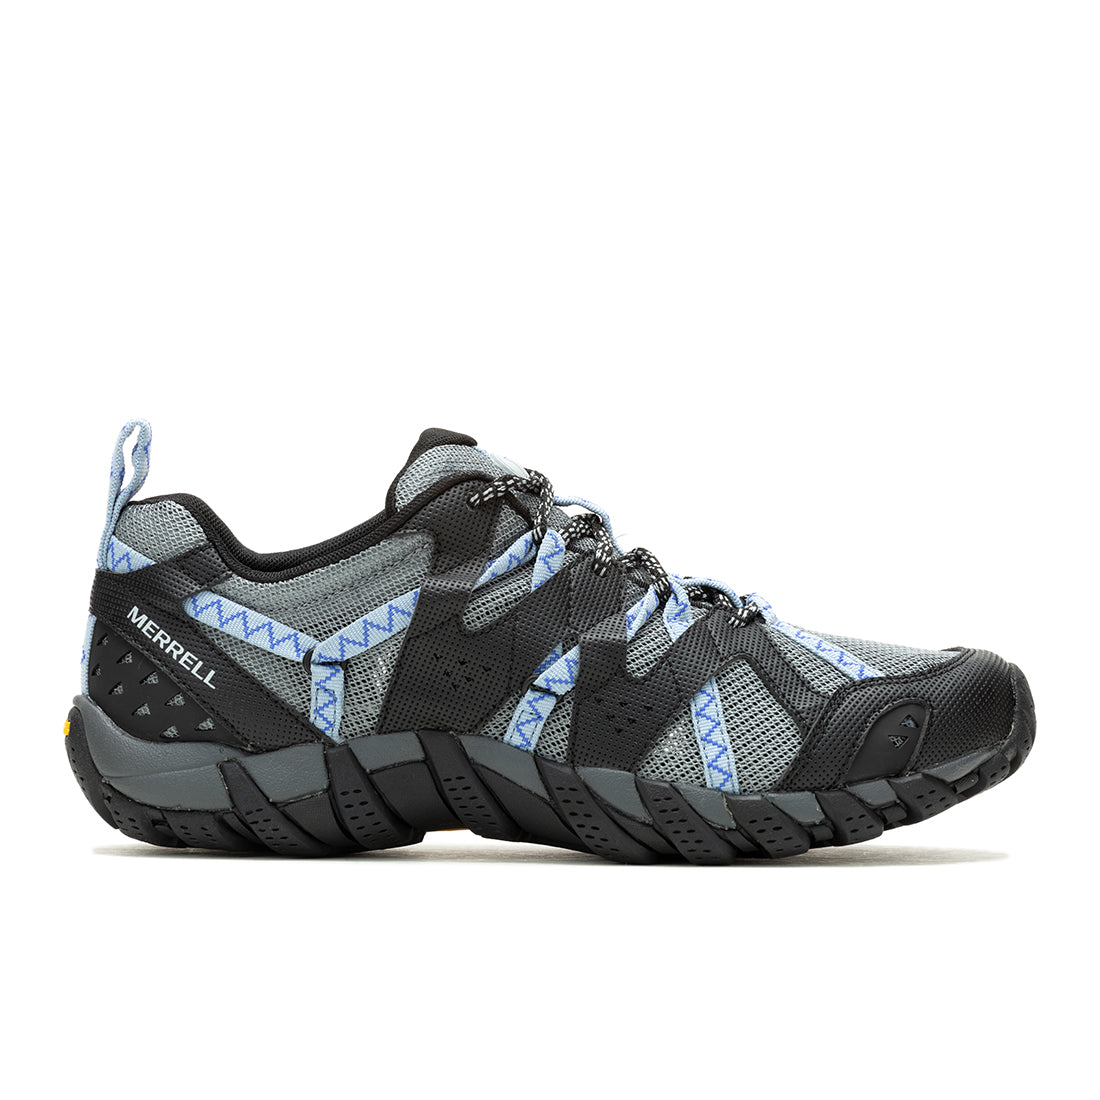 Waterpro Maipo 2 – Black/Chambray Womens Hydro Hiking Shoes